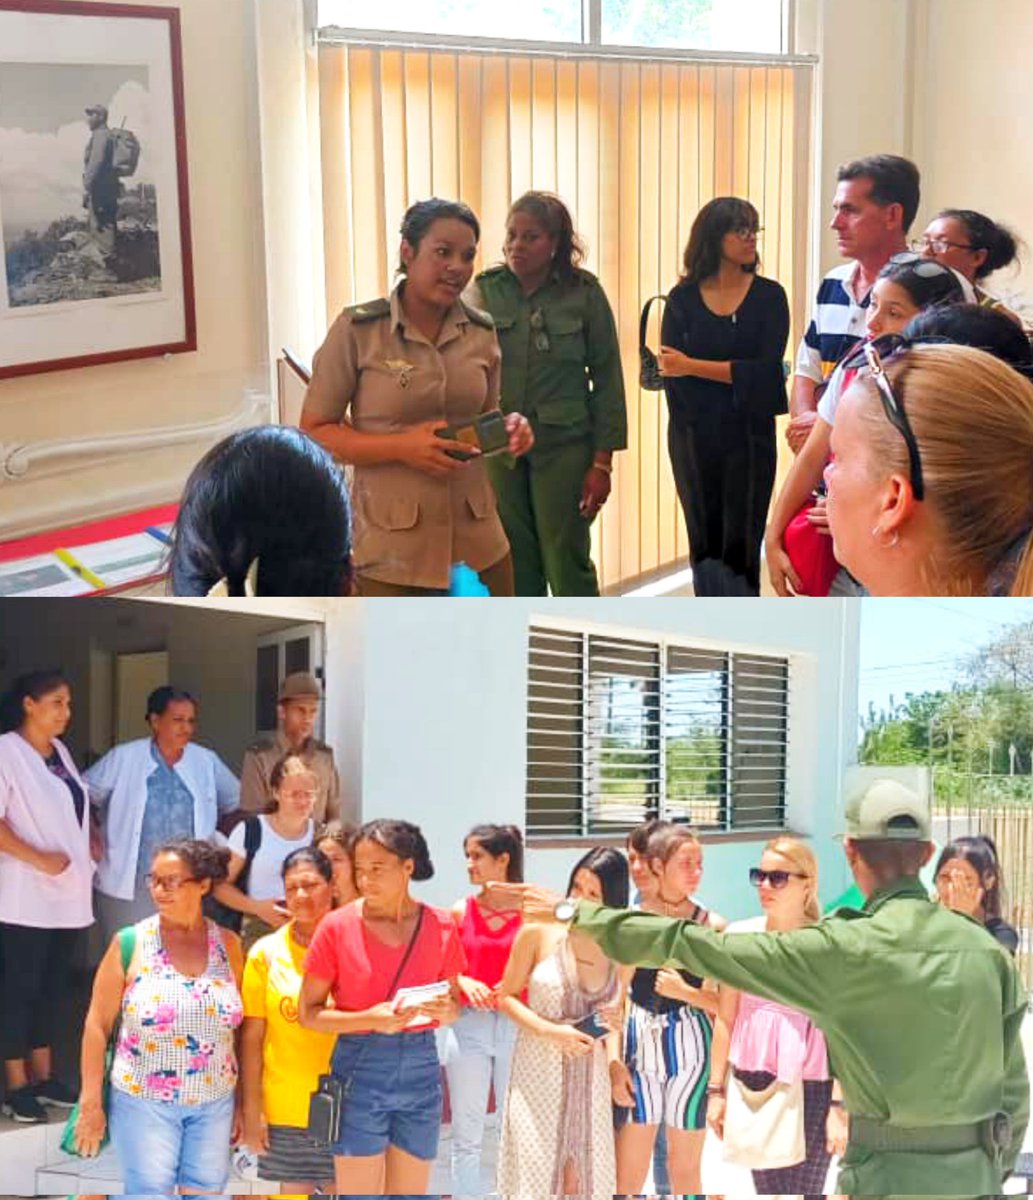 🔴🟢| En la Región Militar La Habana,se realizó encuentro con muchachas interesadas en ingresar al servicio militar voluntario femenino.Durante la reunión, las aspirantes pudieron conocer más sobre las oportunidades y beneficios que ofrece el servicio militar. #Cuba 🇨🇺